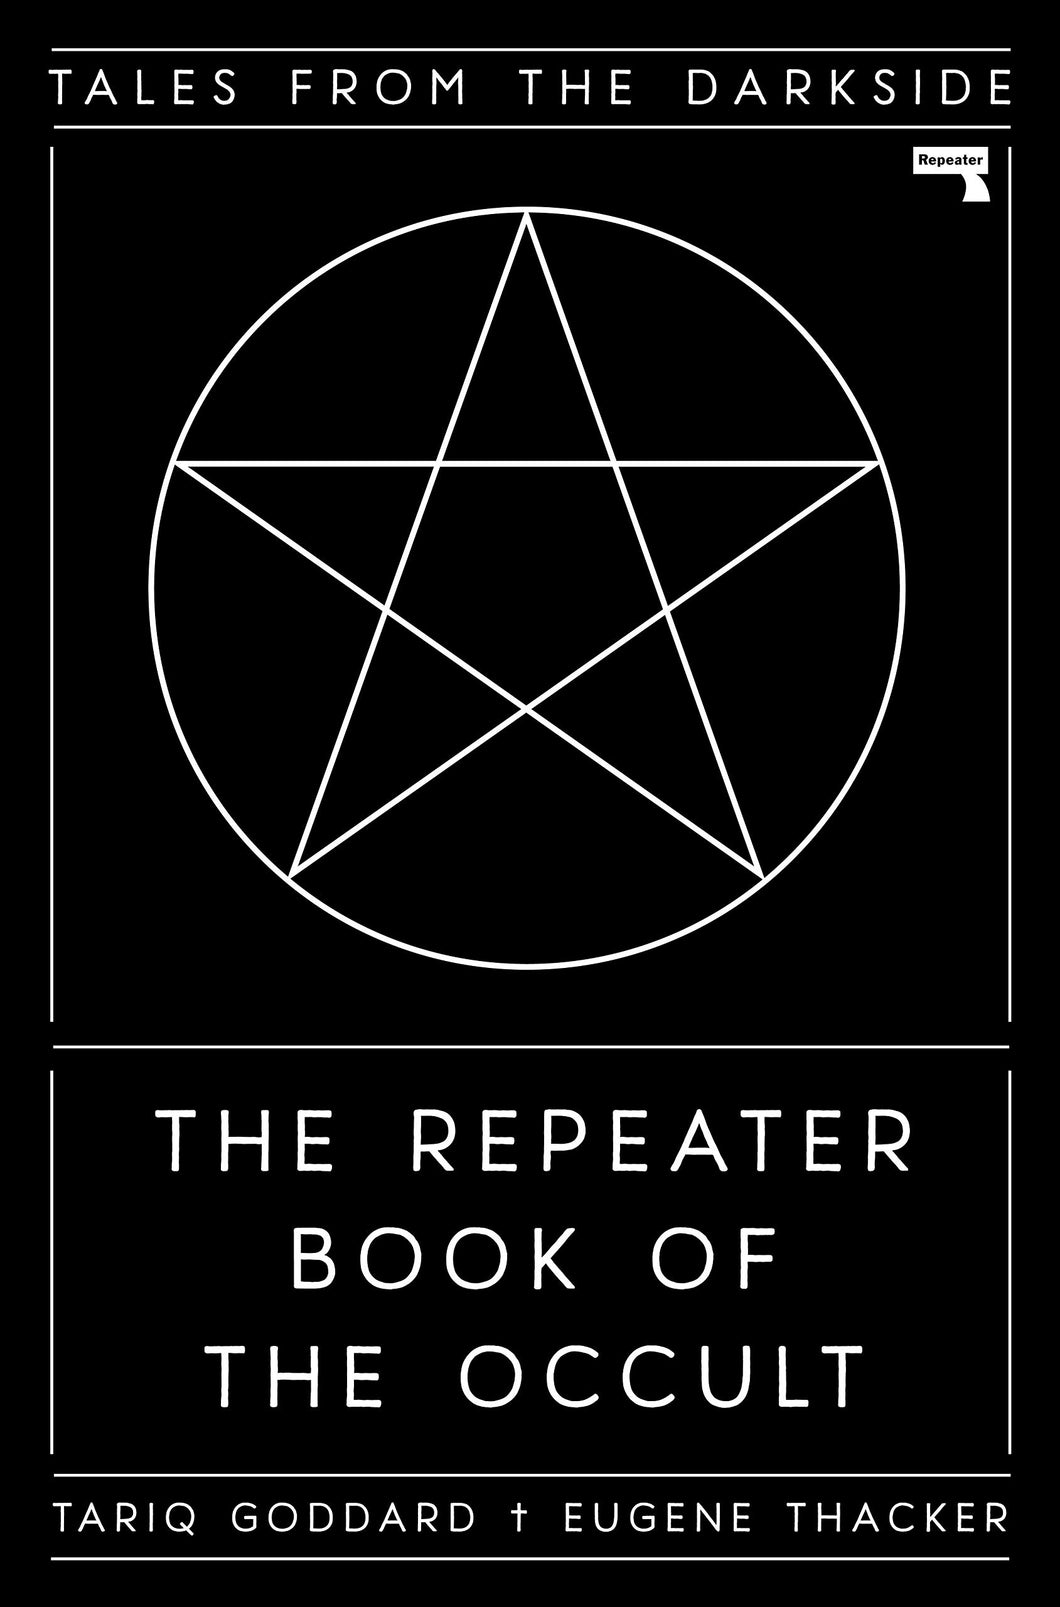 The Repeater Book of the Occult : Tales from the Darkside ร้านหนังสือและสิ่งของ เป็นร้านหนังสือภาษาอังกฤษหายาก และร้านกาแฟ หรือ บุ๊คคาเฟ่ ตั้งอยู่สุขุมวิท กรุงเทพ